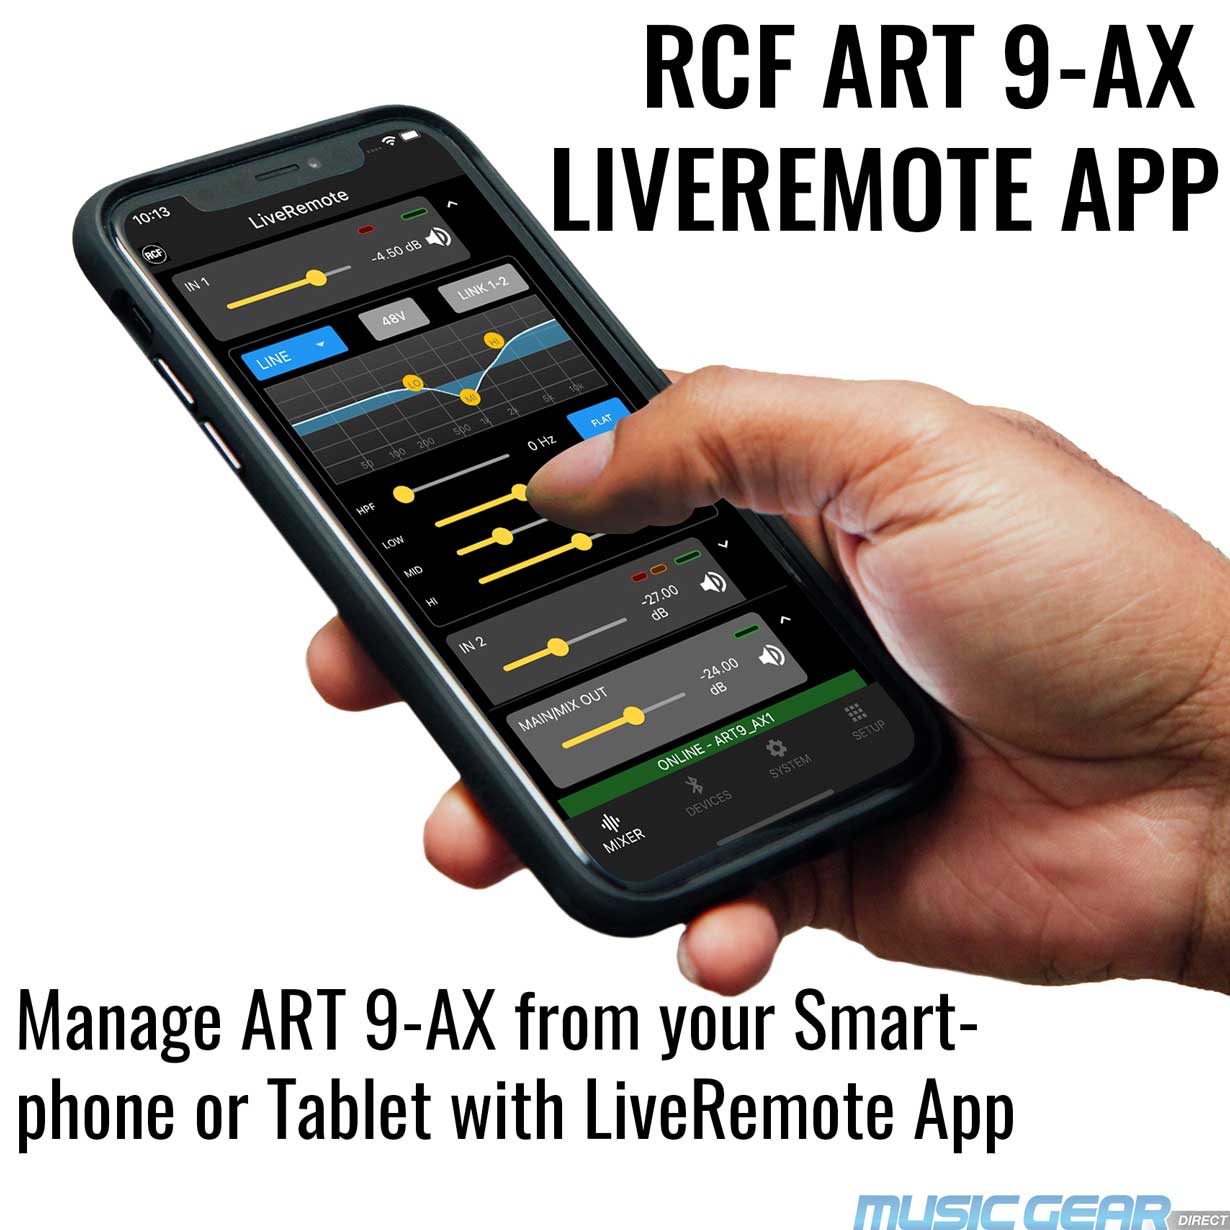 RCF ART 9-AX LiveRemote App